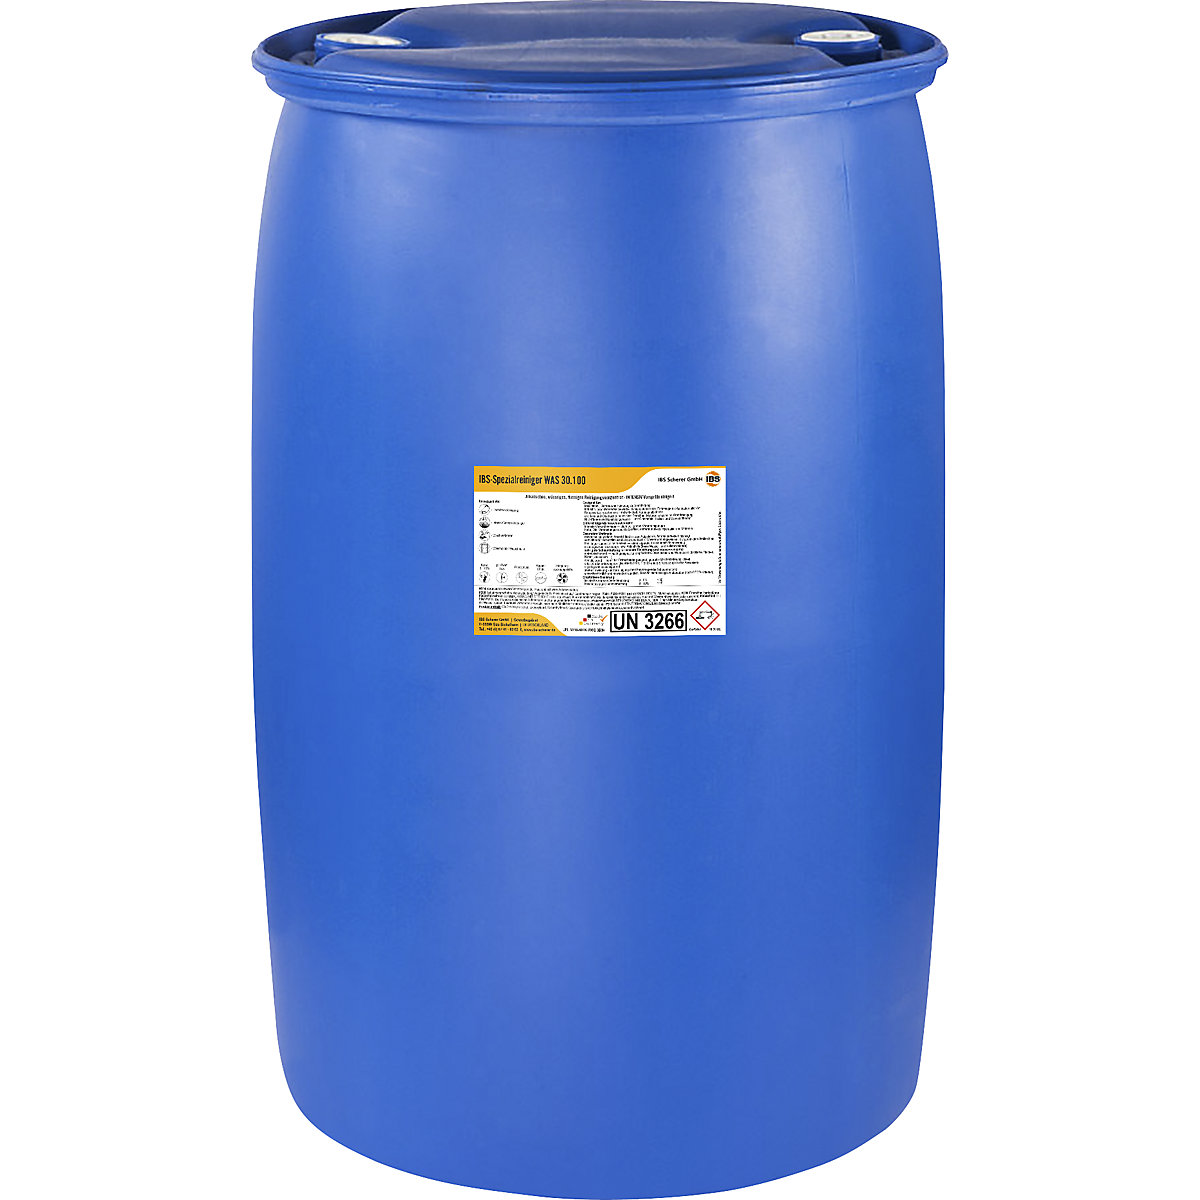 Detergente para alta pressão/pré-pulverização WAS 30.100 – IBS Scherer, valor pH 13,5, capacidade 200 l-6